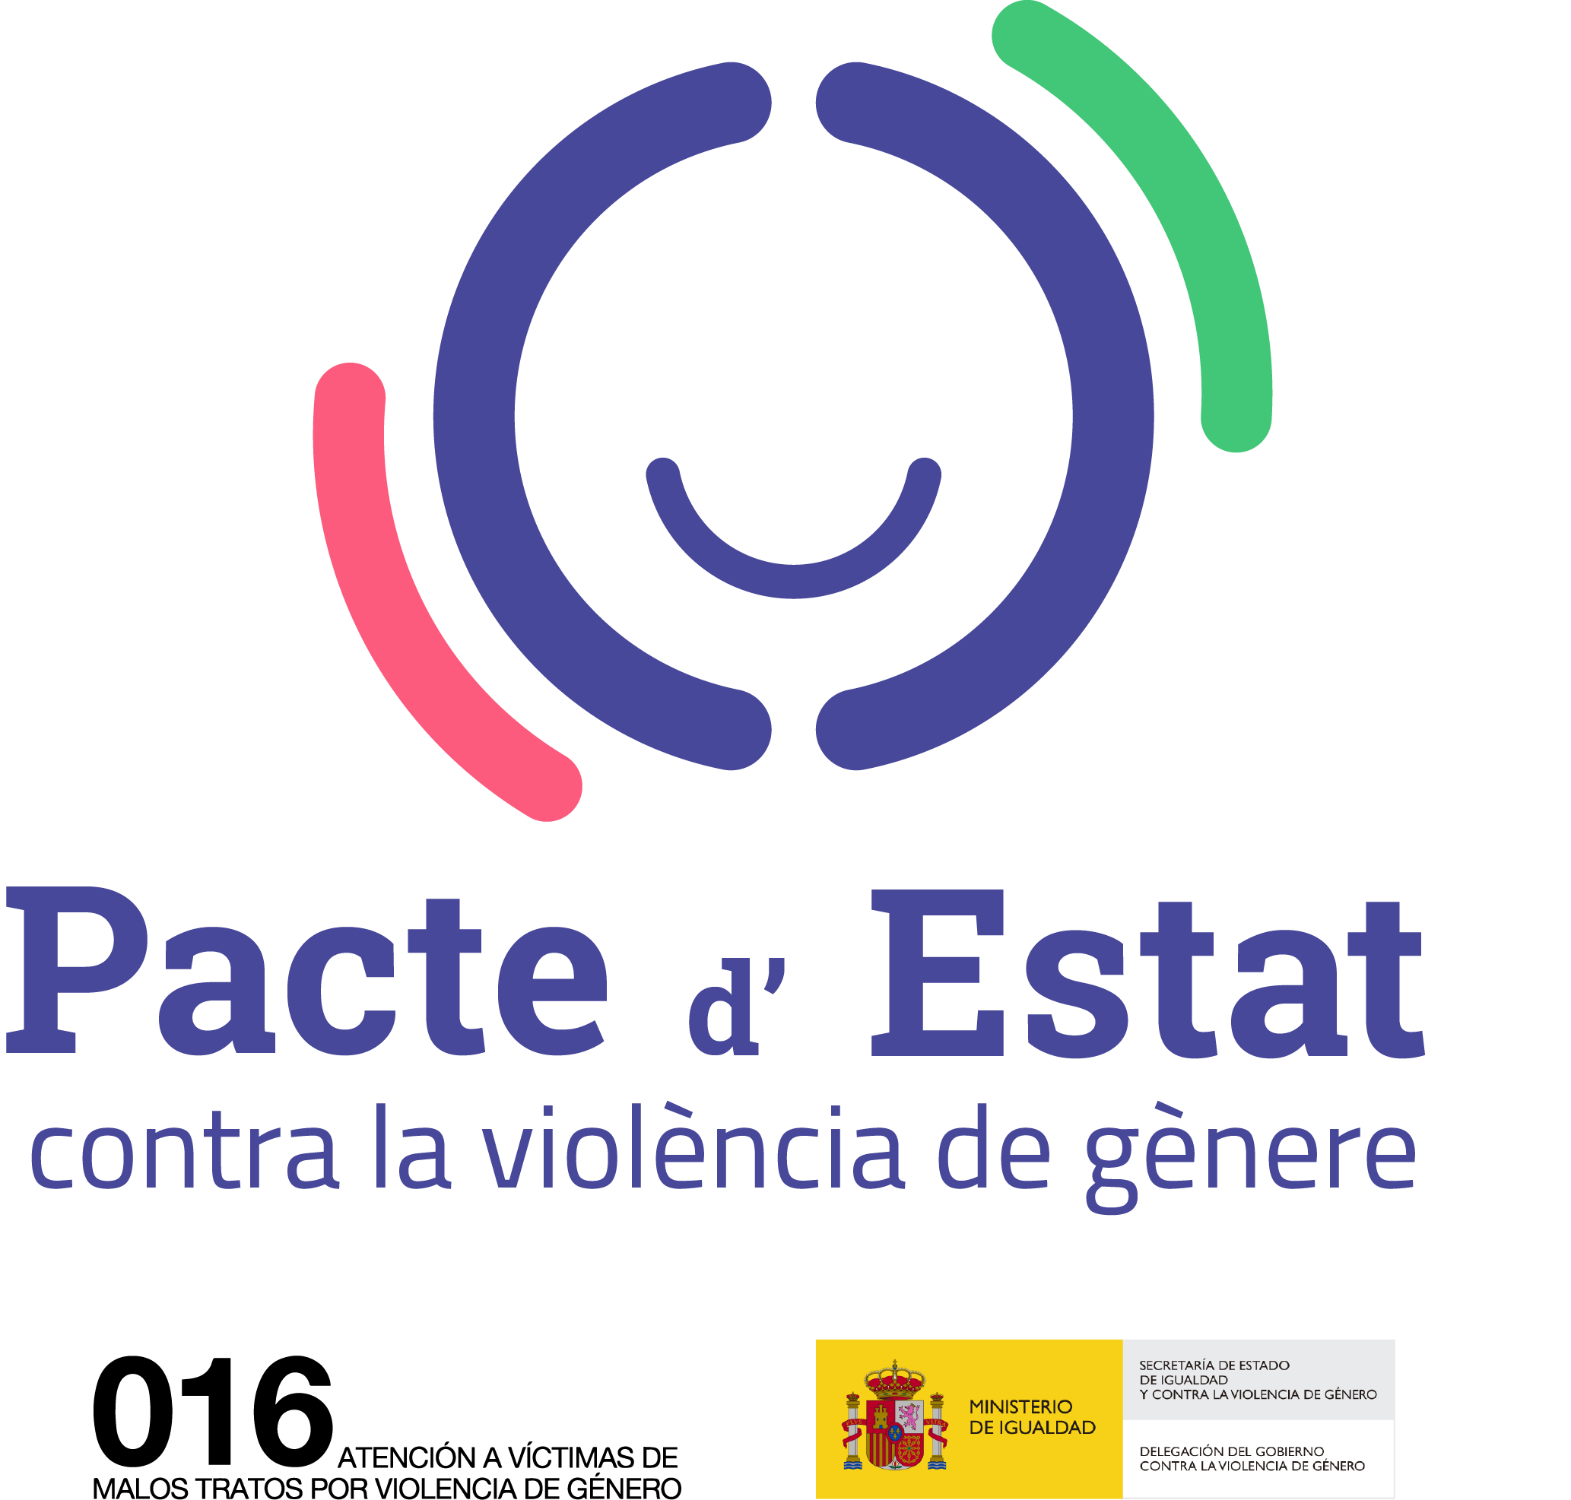 Fondos concedidos en el Ayuntamiento de Pedreguer del Pacto de Estado contra la violencia de género